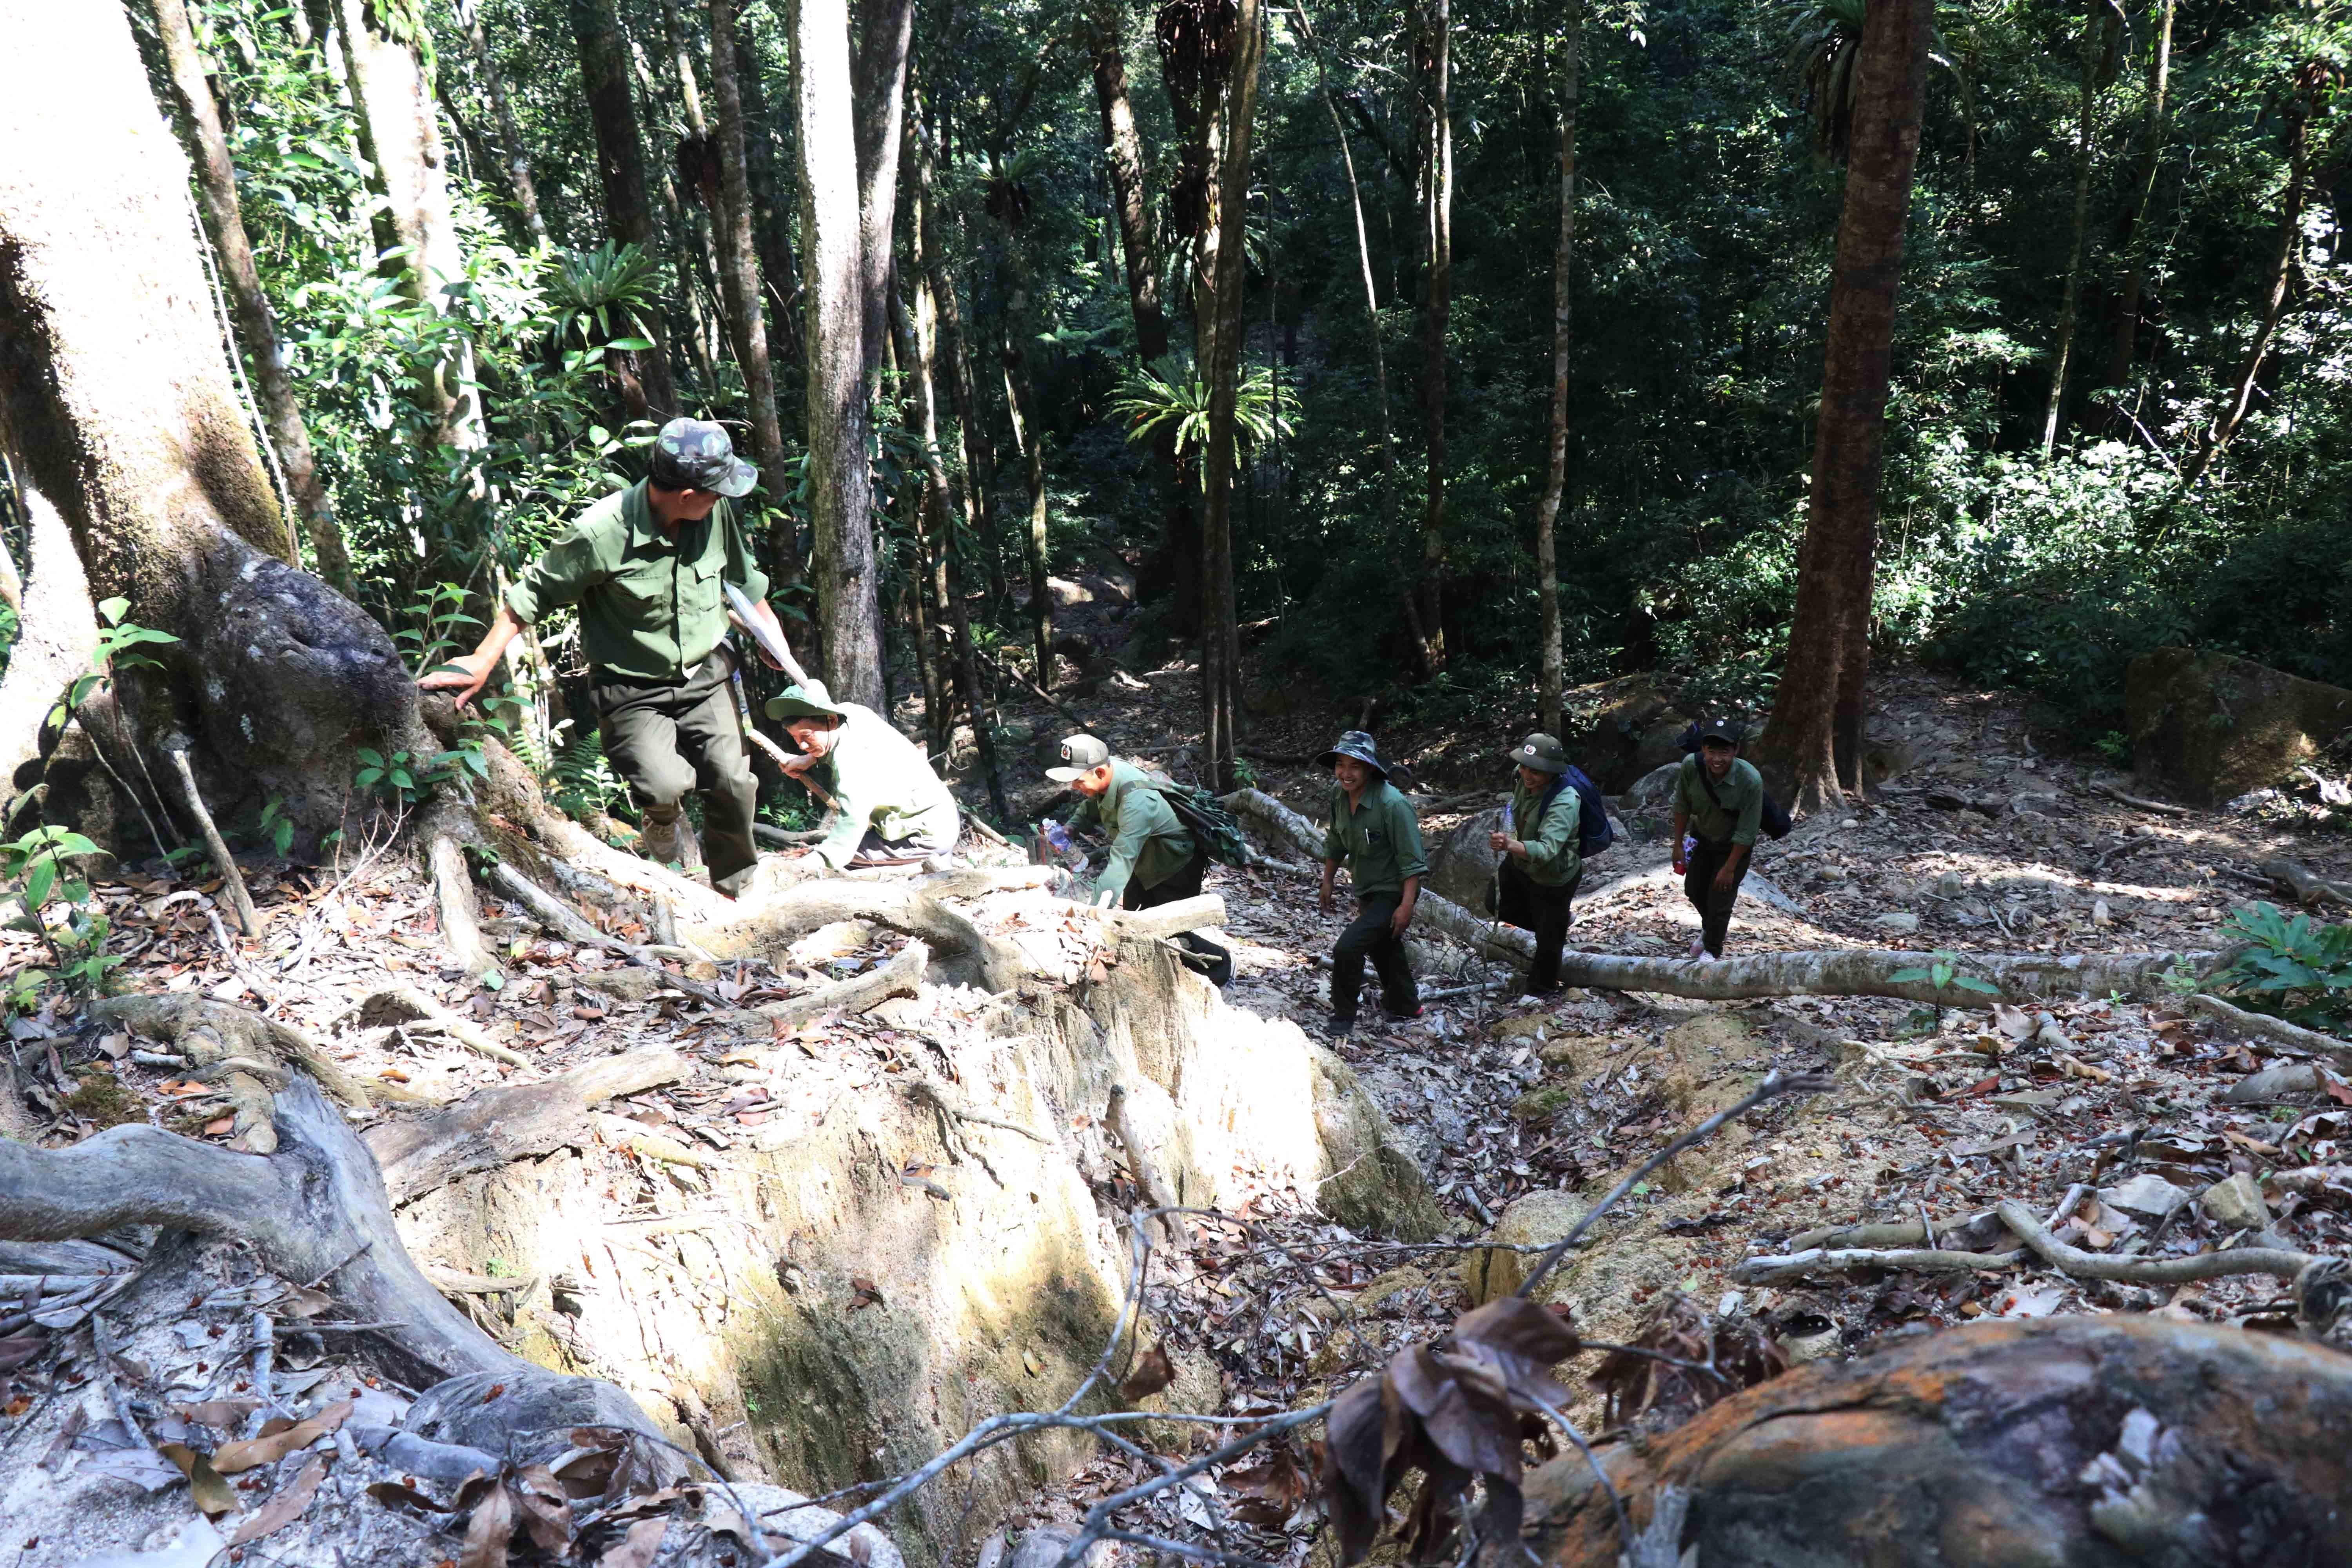 Lực lượng quản lý bảo vệ rừng của Công ty TNHH MTV Lâm nghiệp Krông Bông (huyện Krông Bông) gặp nhiều khó khăn trong tuần tra bảo vệ rừng. (Ảnh: Tuấn Anh/TTXVN)